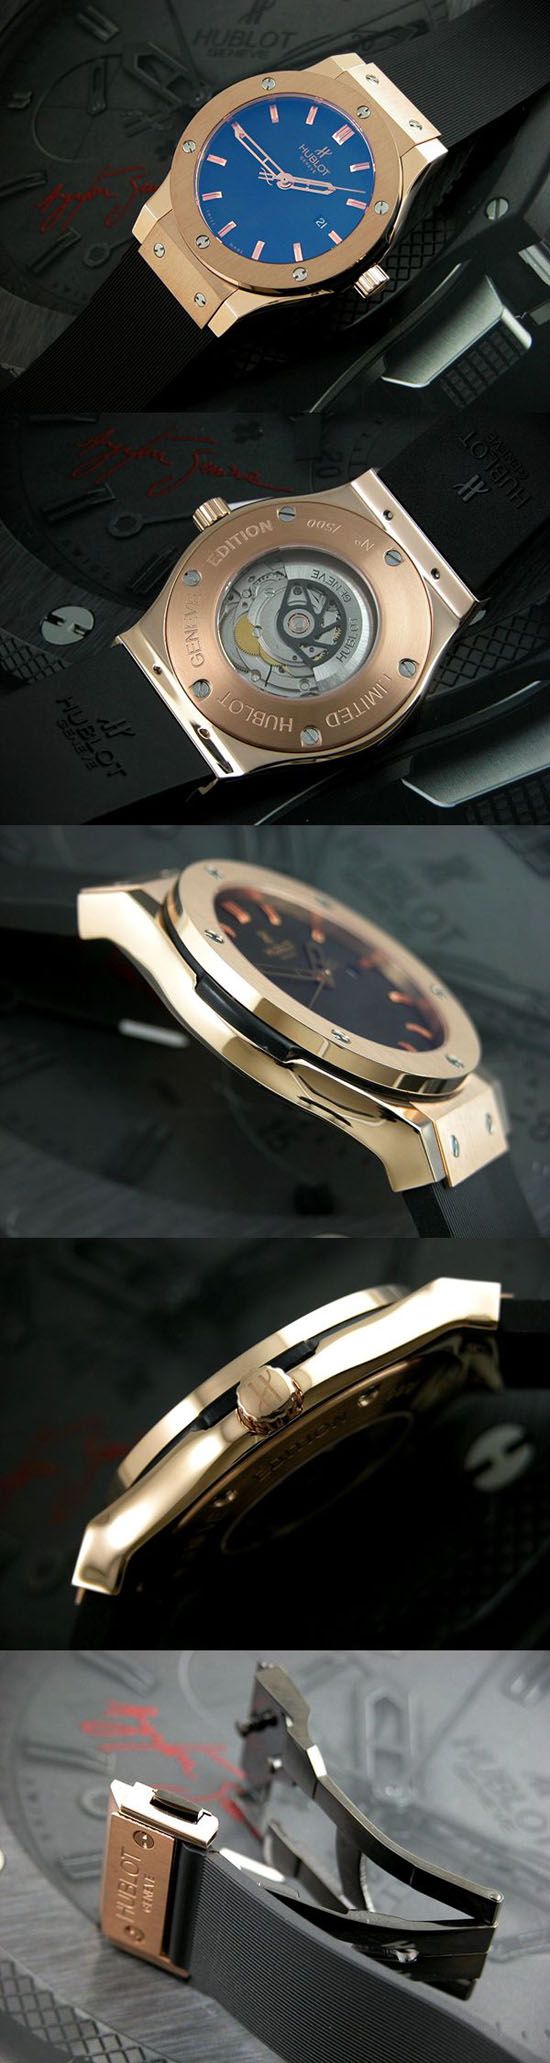 おしゃれなブランド時計がウブロ-ビッグバン-HUBLOT-561-PX-1180-RX-bd-男性用を提供します.